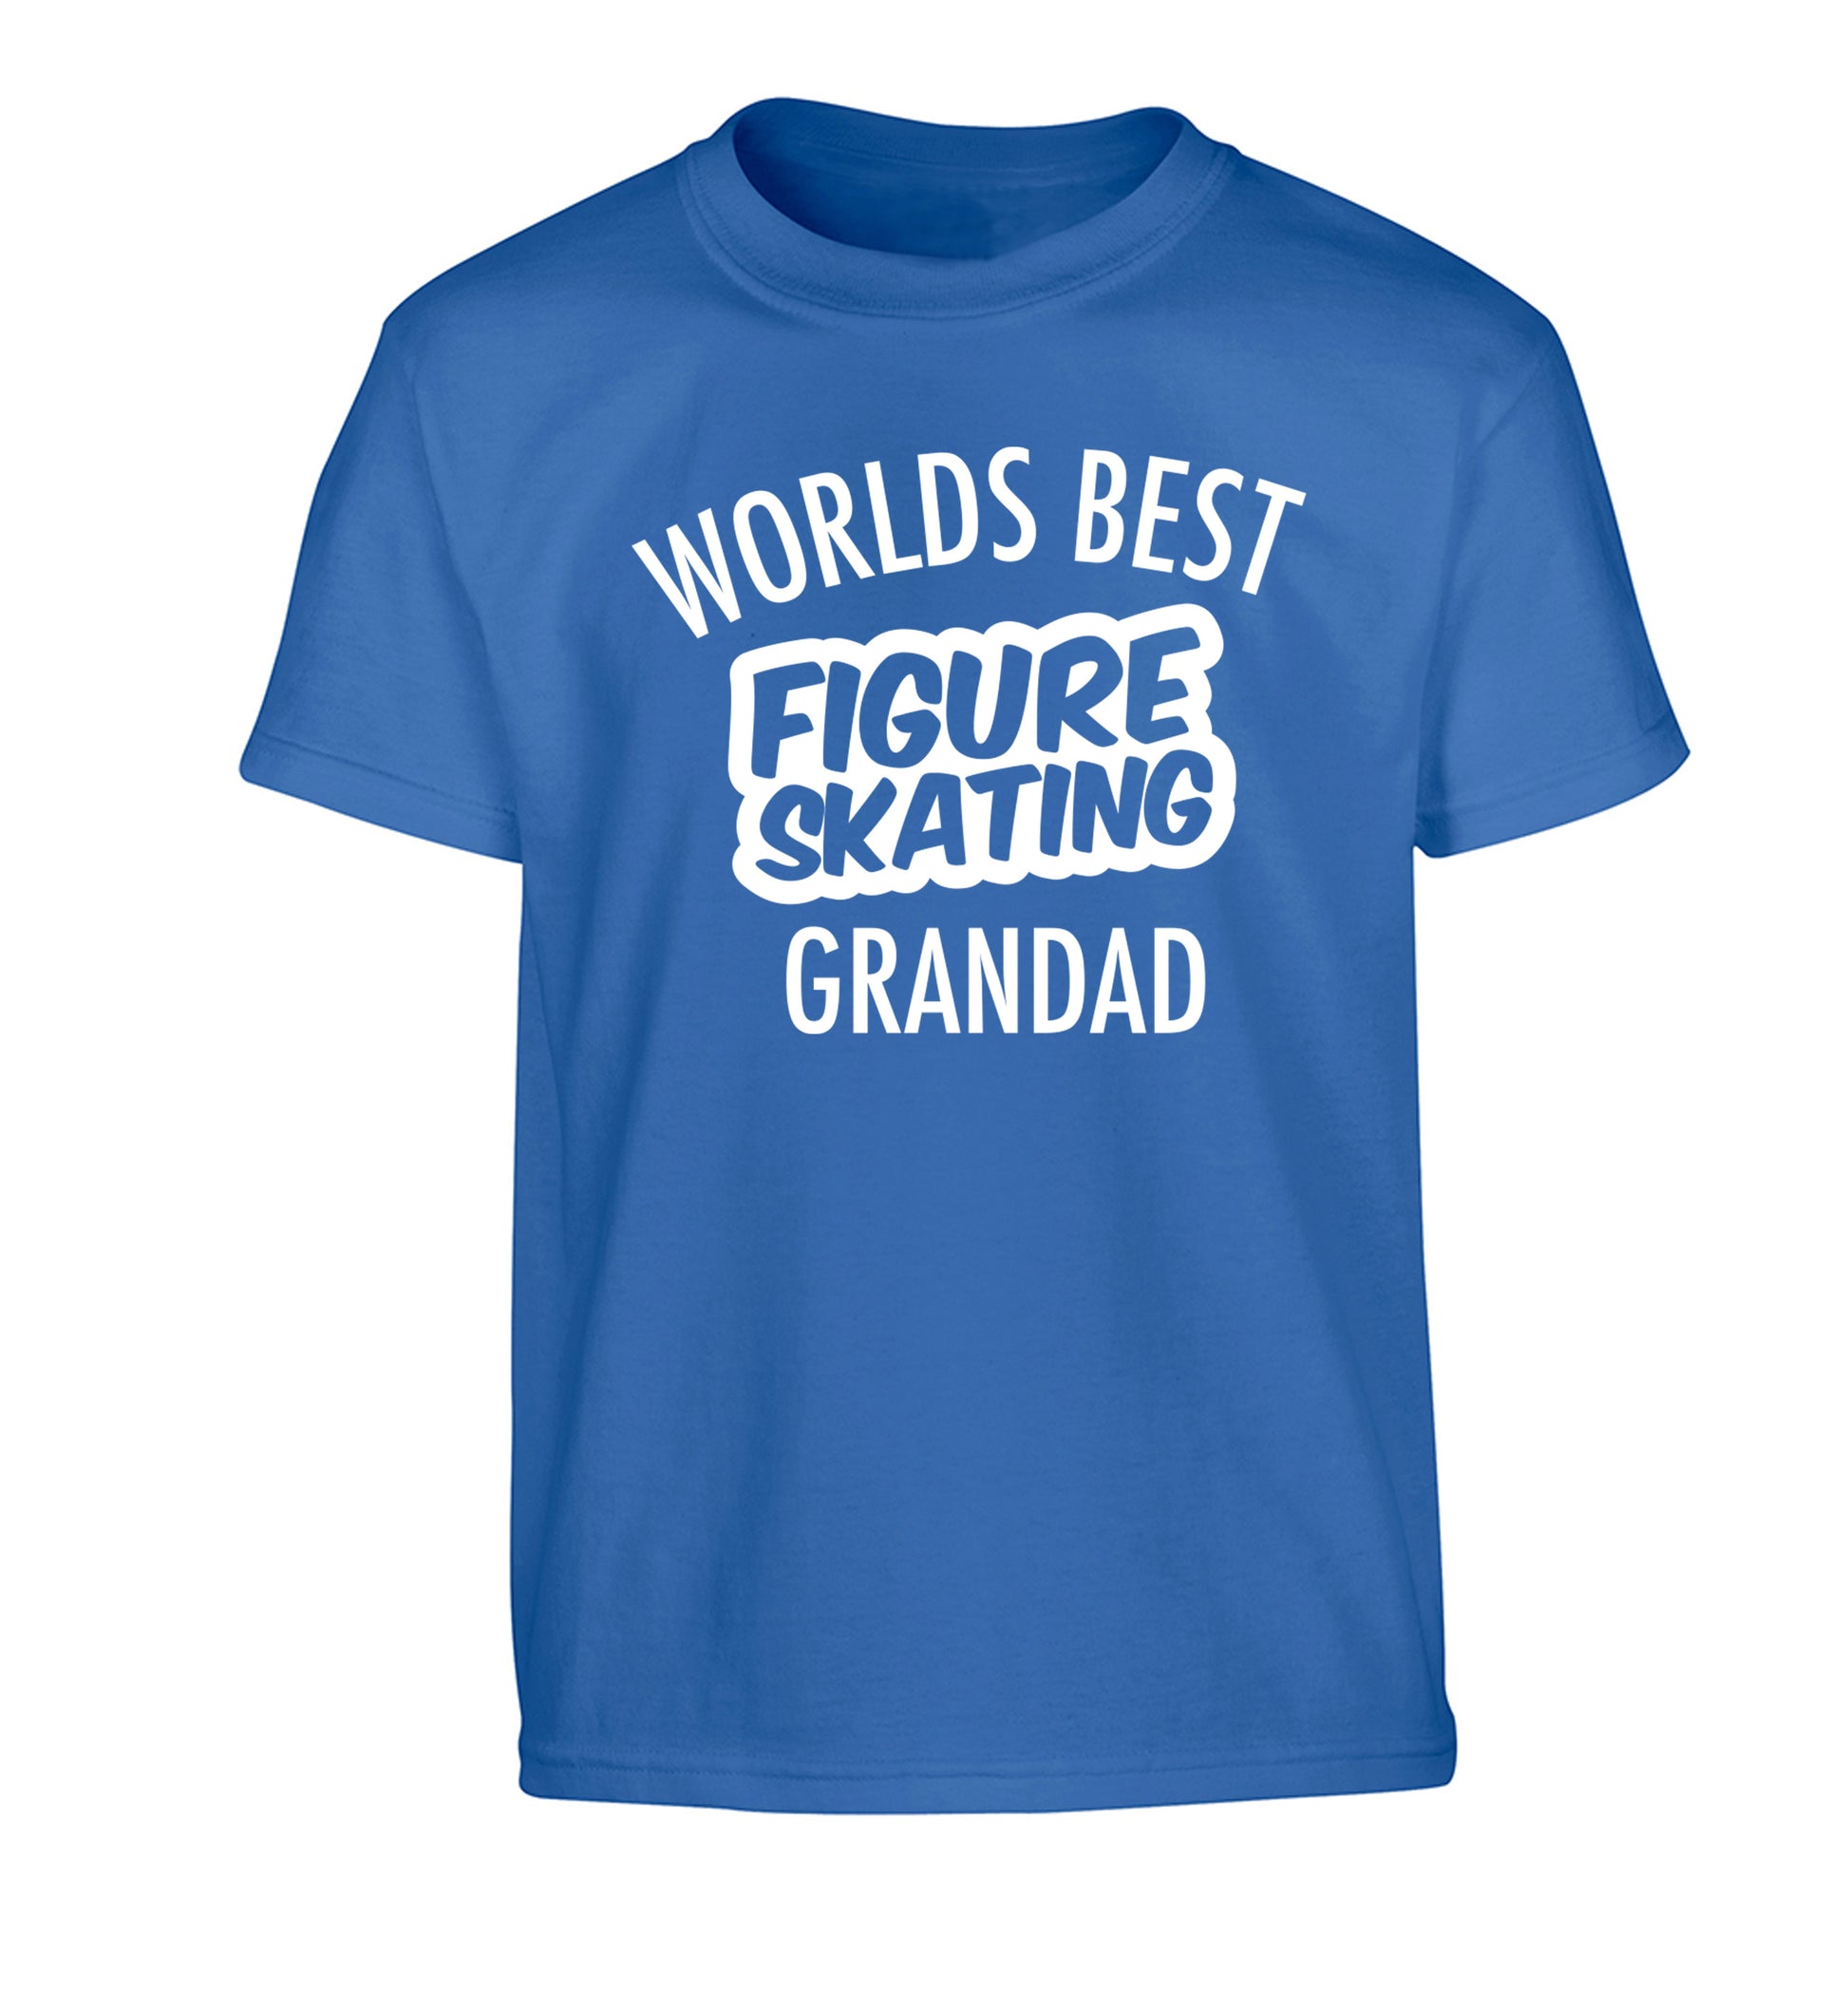 Worlds best figure skating grandad Children's blue Tshirt 12-14 Years